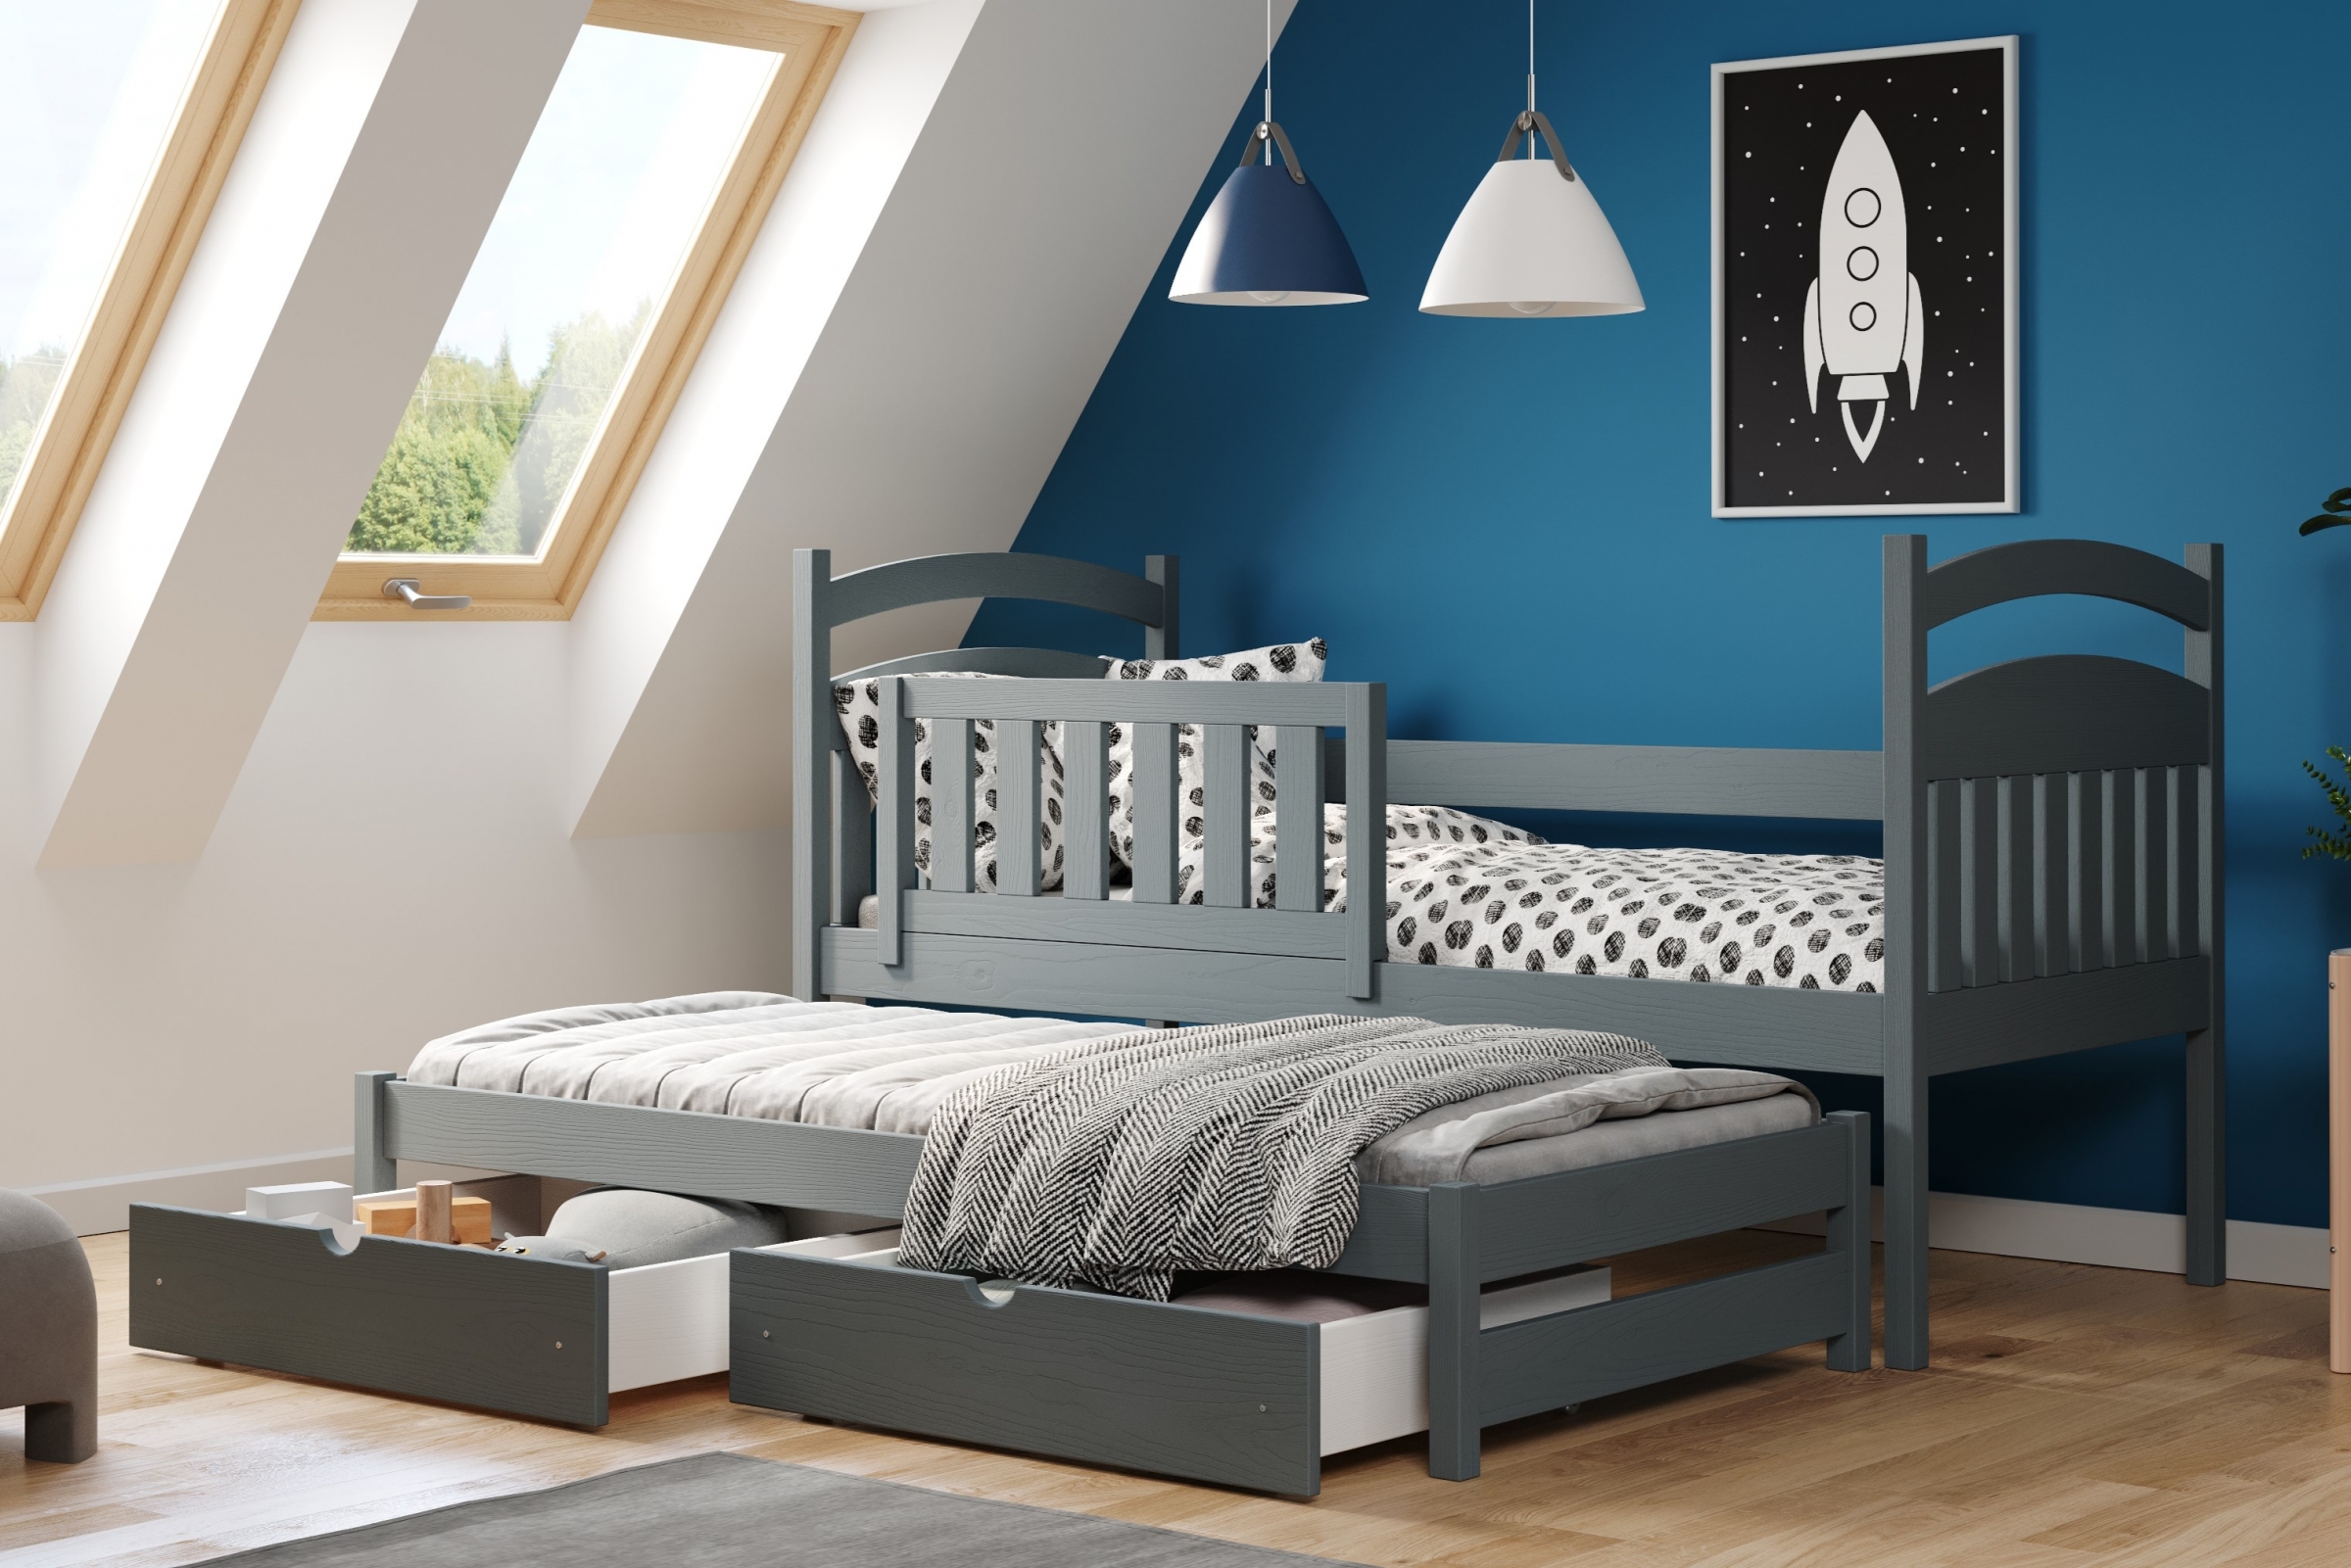 Detská posteľ prízemná výsuvna Amely - Farba grafit, rozmer 80x160 Posteľ dzieciece prízemná s výsuvným lôžkom Amely - Farba grafit - vizualizácia